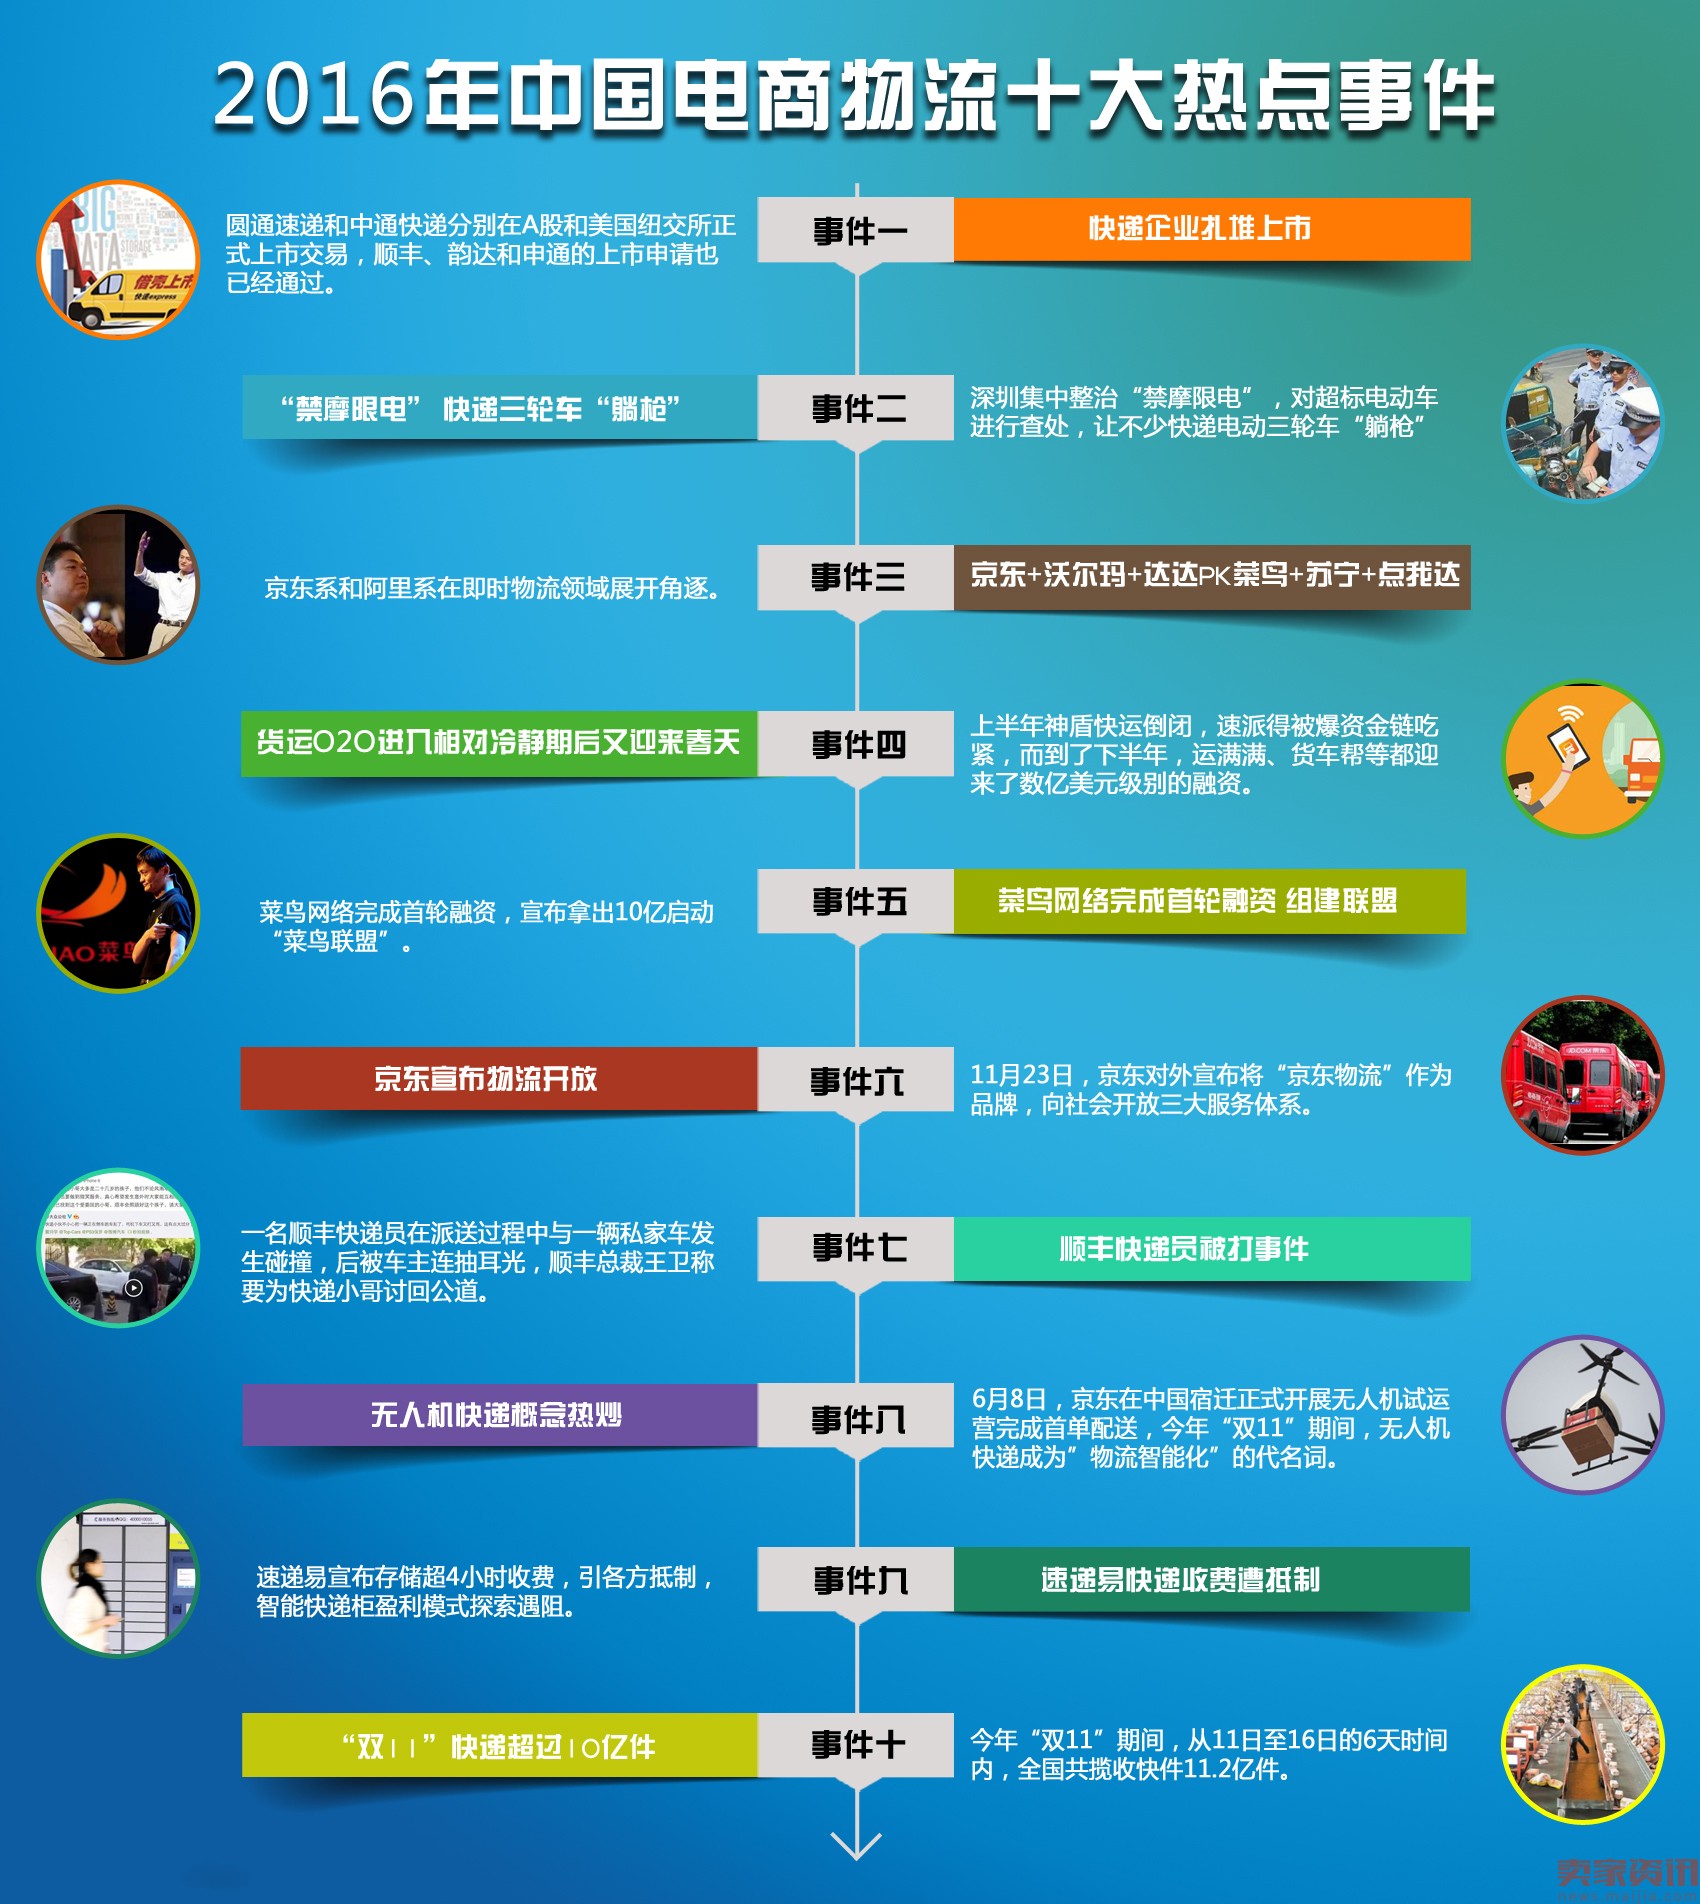 2016年中国电商物流十大热点事件